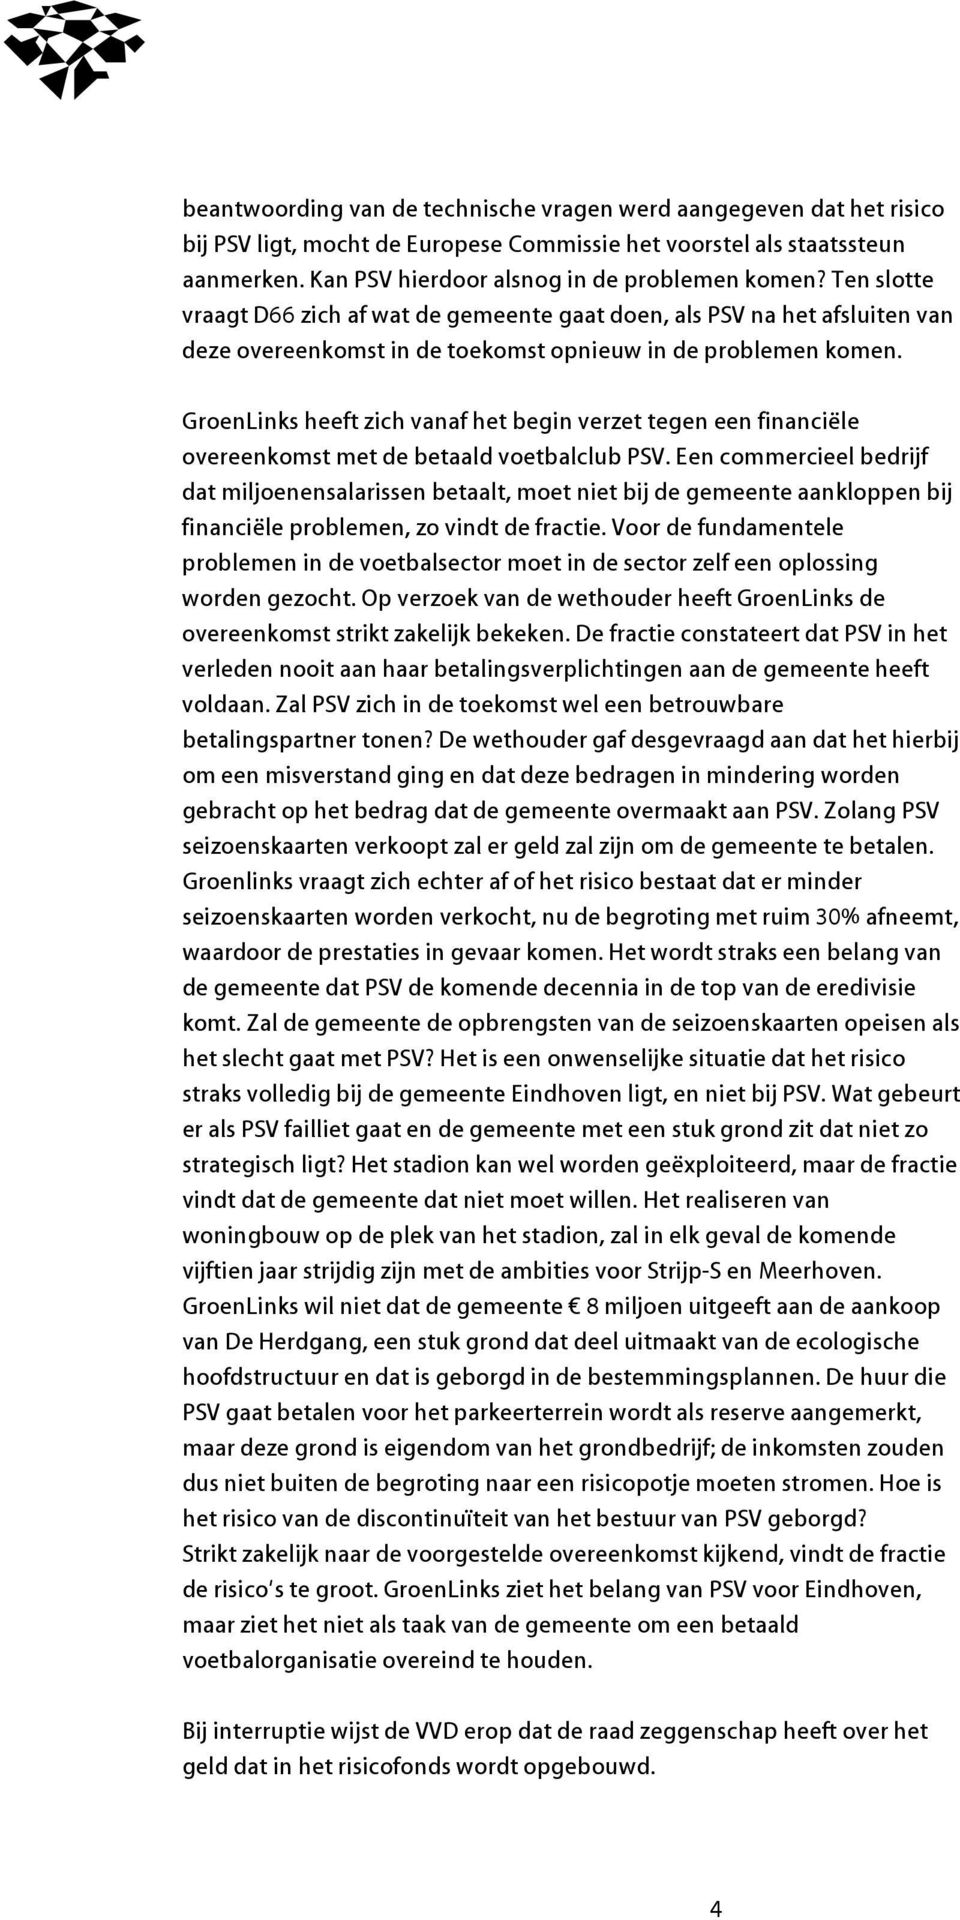 GroenLinks heeft zich vanaf het begin verzet tegen een financiële overeenkomst met de betaald voetbalclub PSV.